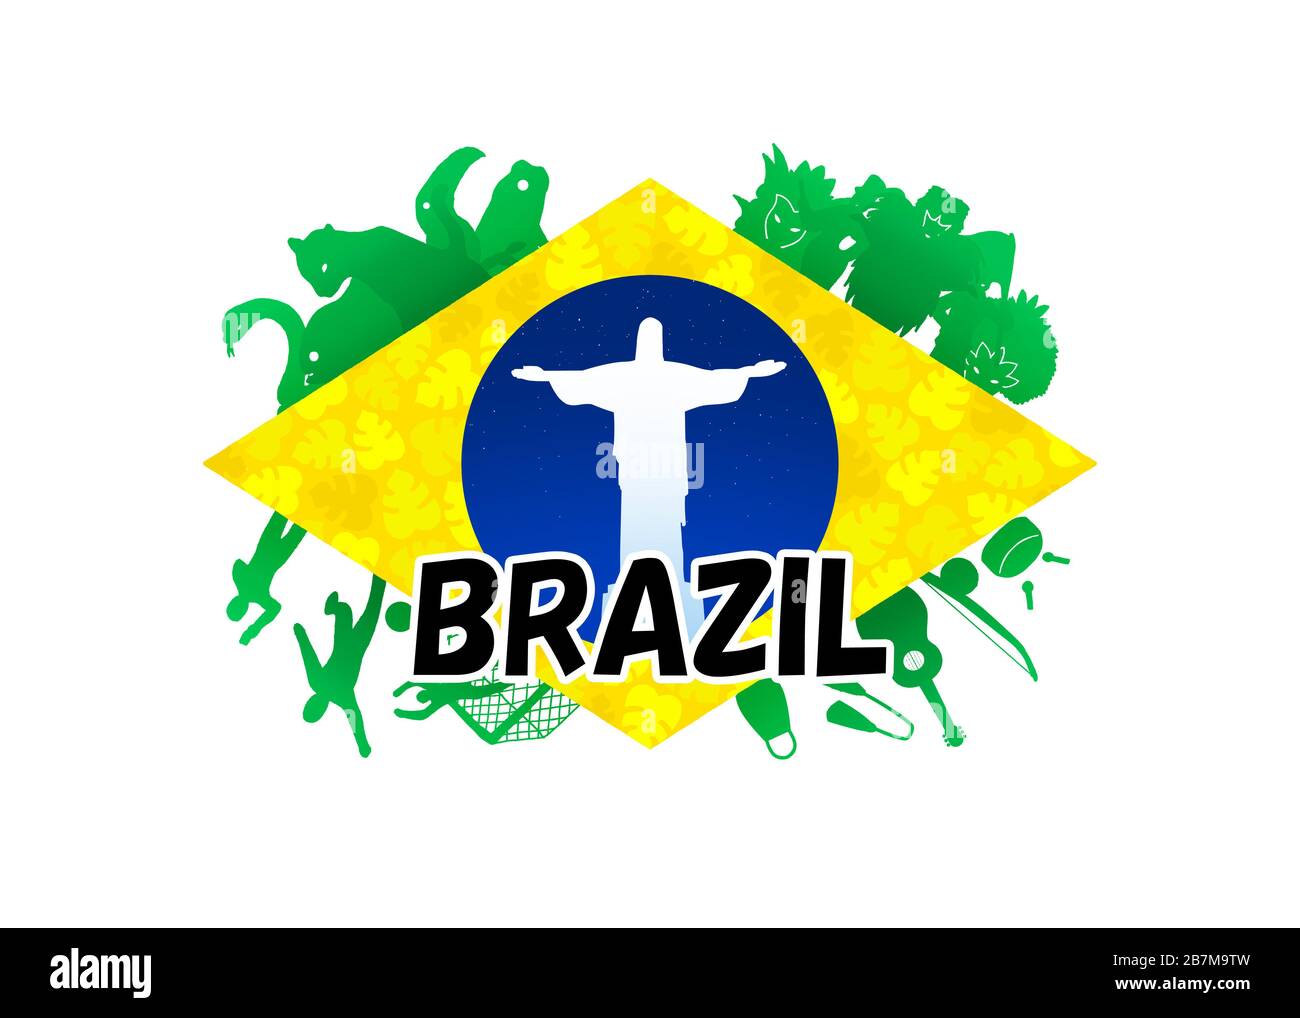 Das Logo wurde von der Flagge Brasiliens adaptiert und zeigt vier  Hauptvertreter Brasiliens, Fußball, Amazon, Karnevalsfestival und  brasilianische Instrumentals Stockfotografie - Alamy